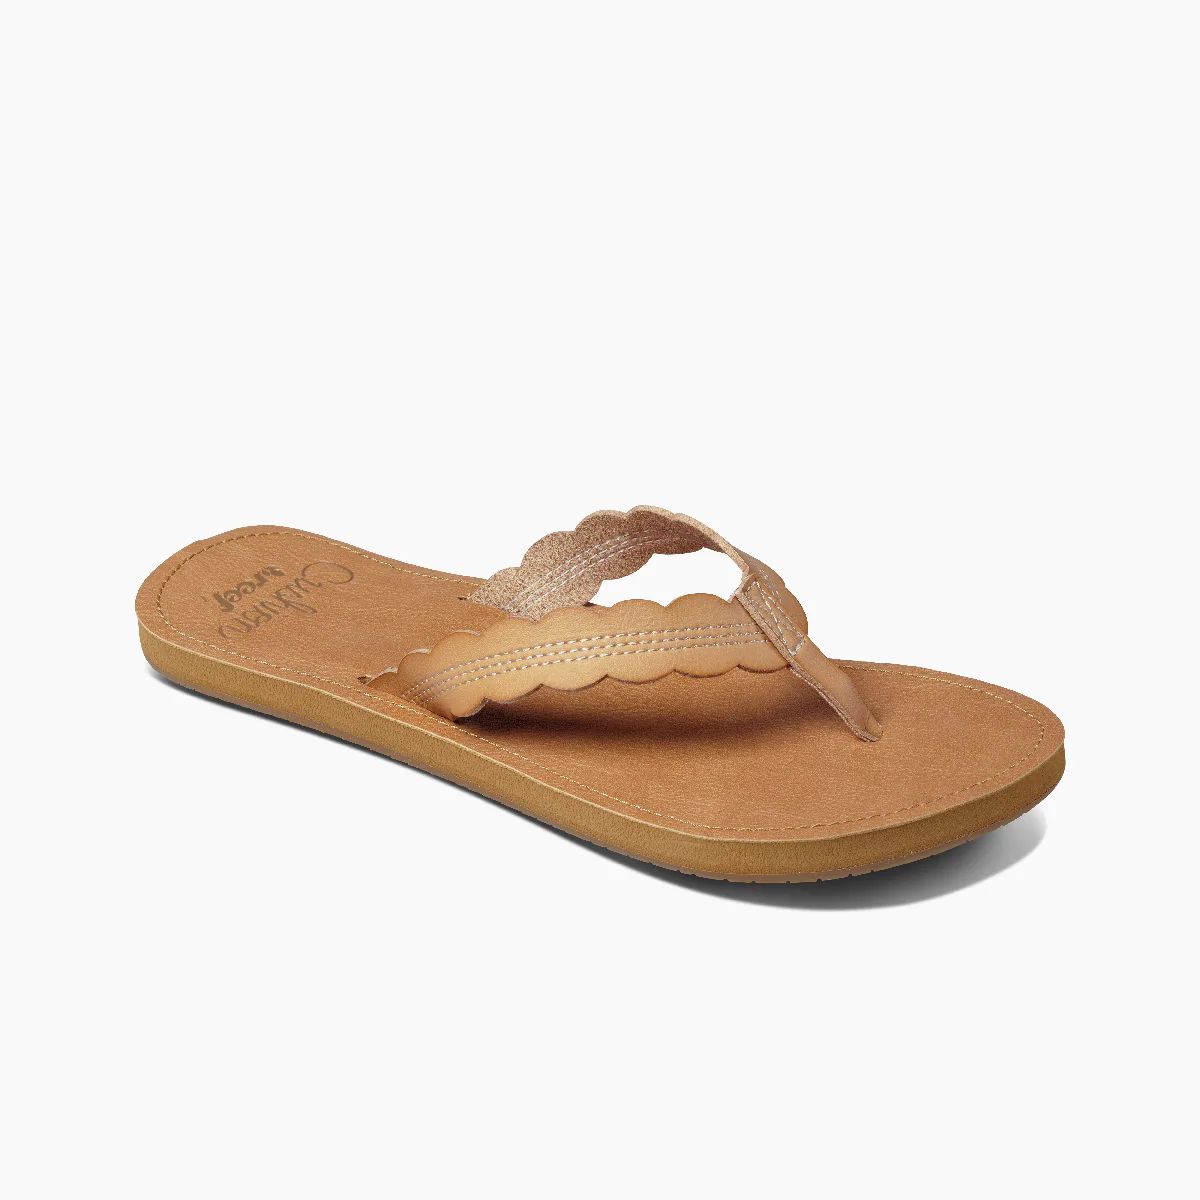 Cushion Celine Women's Sandals | REEF® | Reef